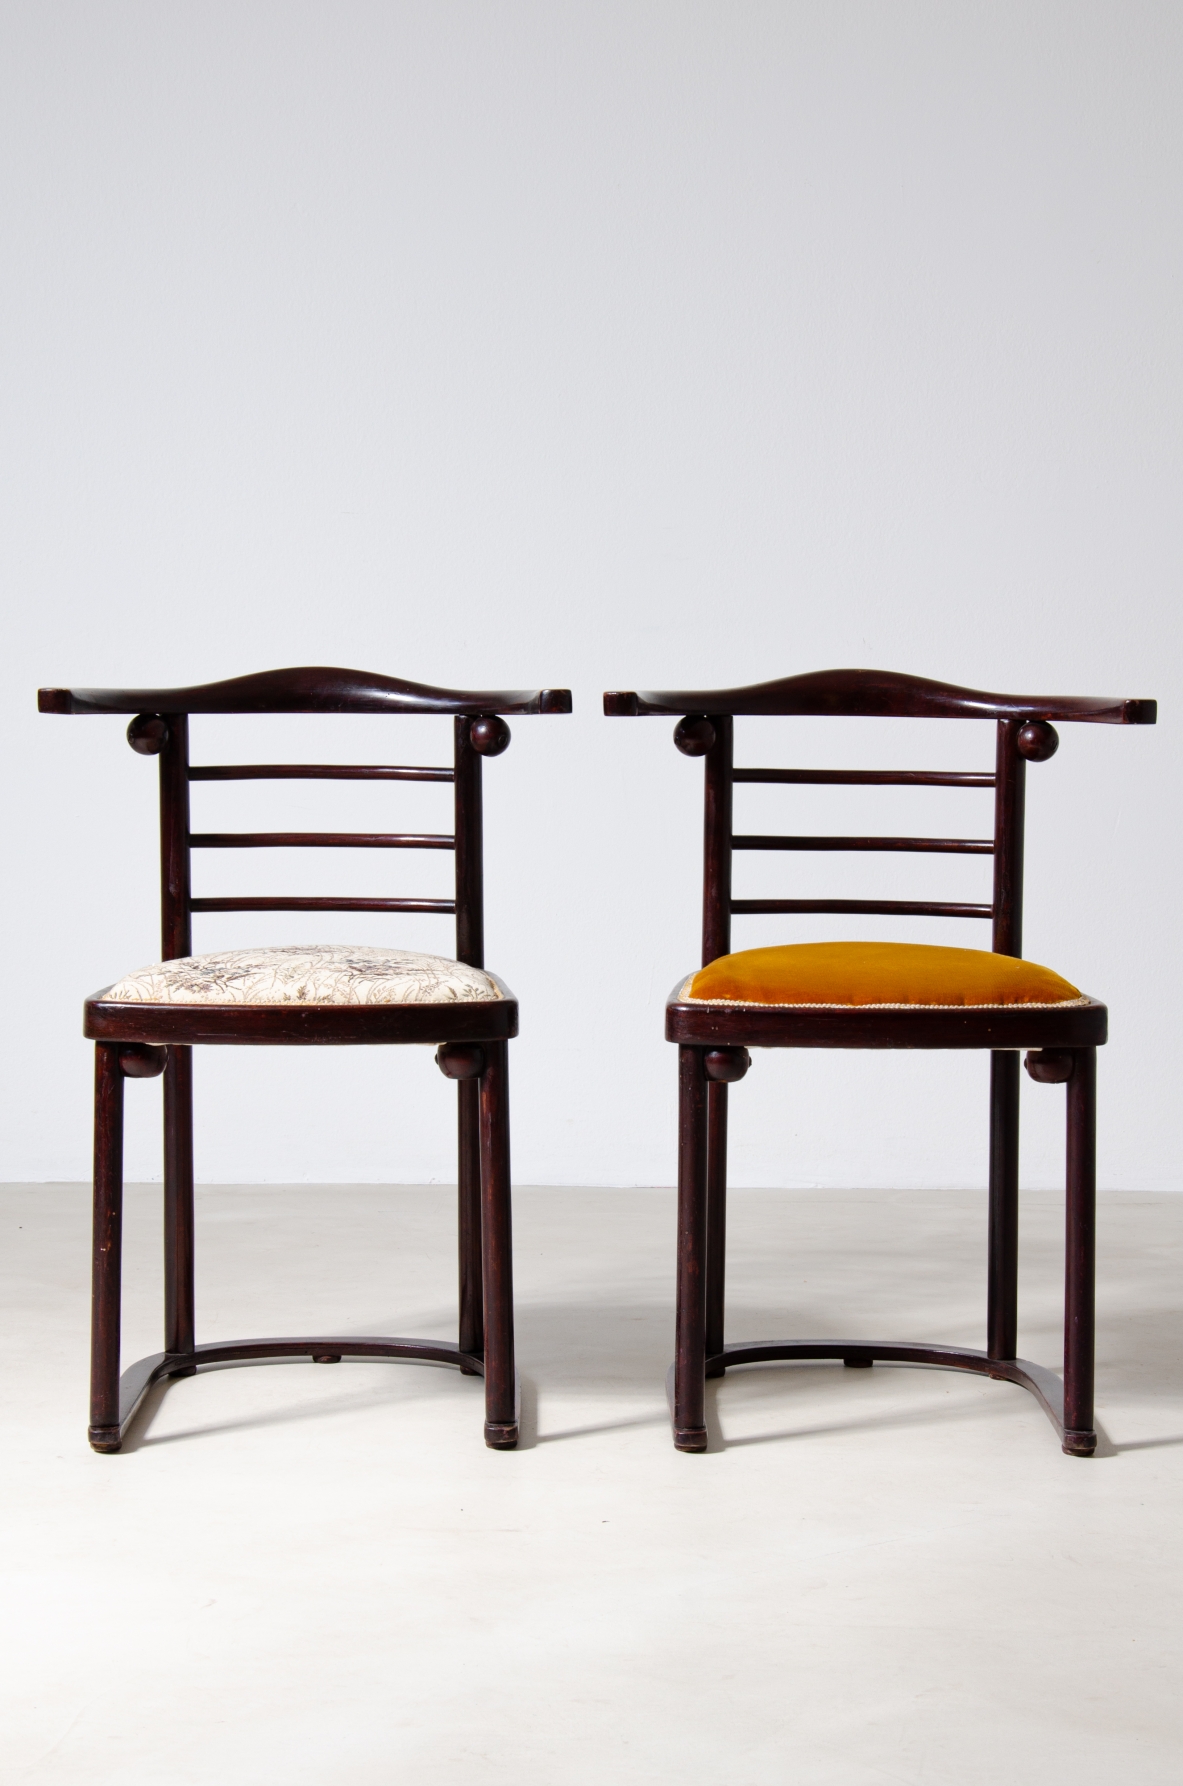 Josef Hoffmann (1870-1956)  Raro set di quattro sedie in legno curvato e lucidato con seduta imbottita.  Prodotte da J.J. Kohn, Vienna, 1907.